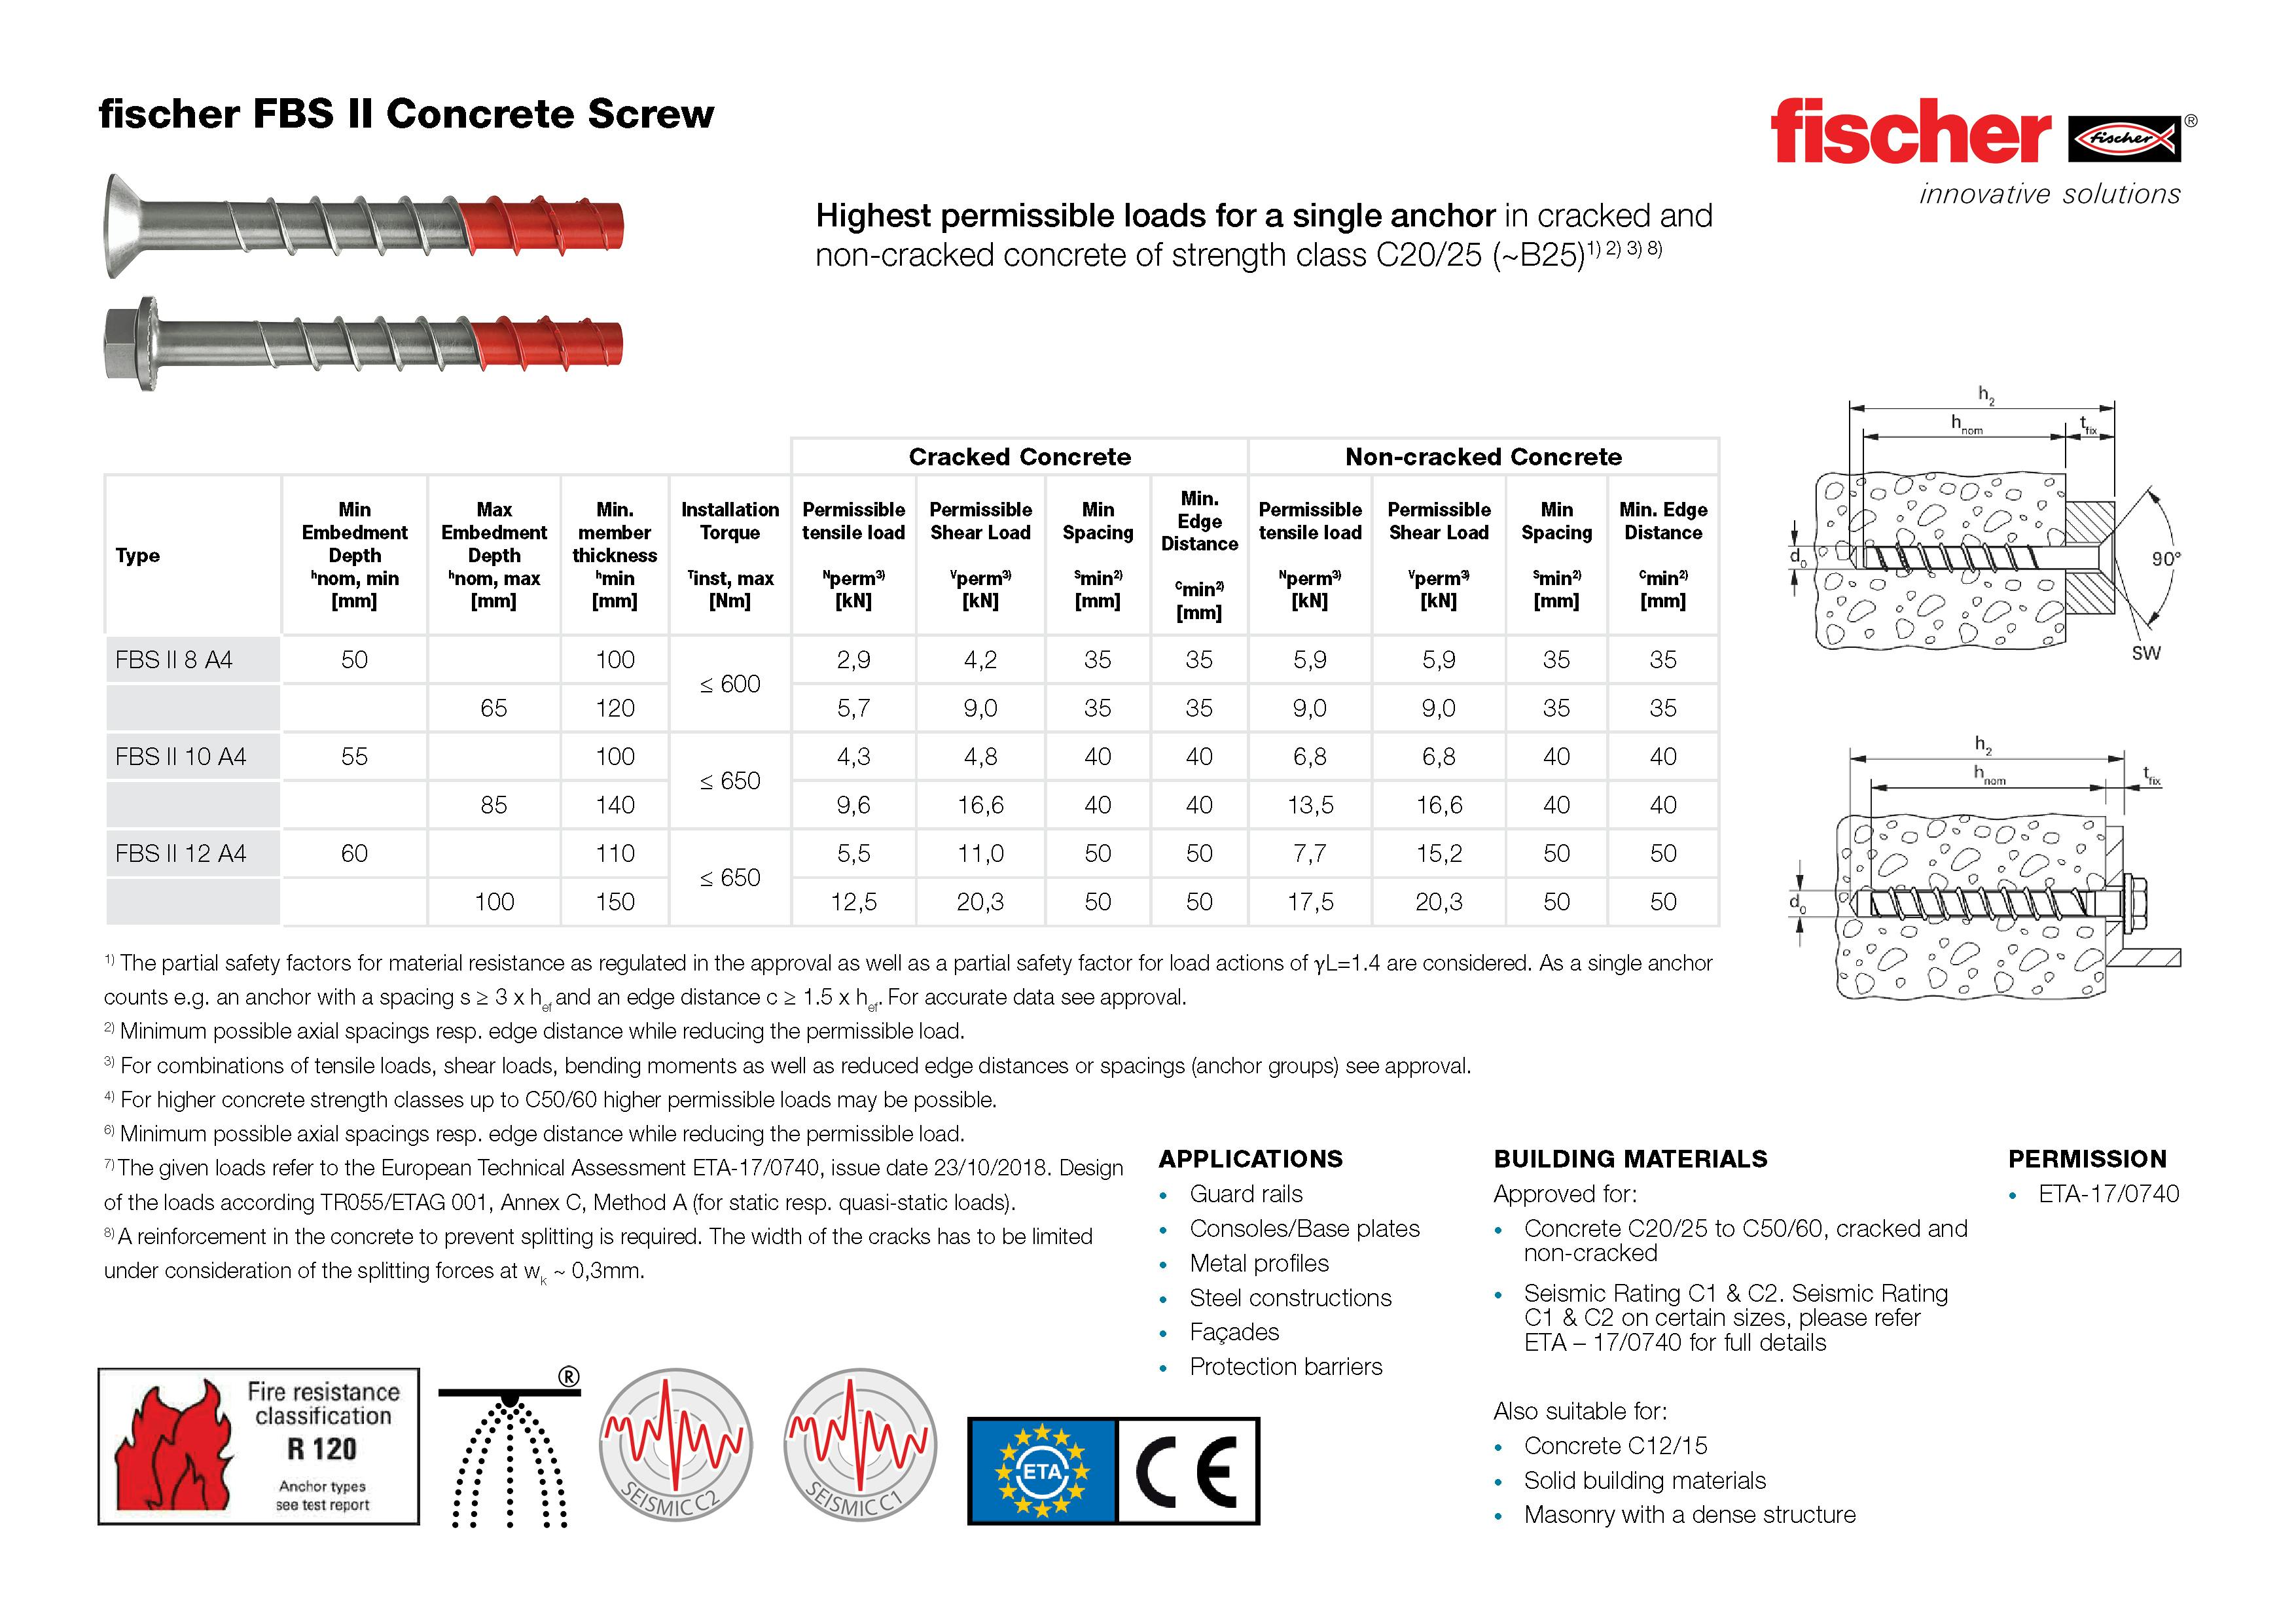 Fischer FBS II Concrete Screw Technical Data